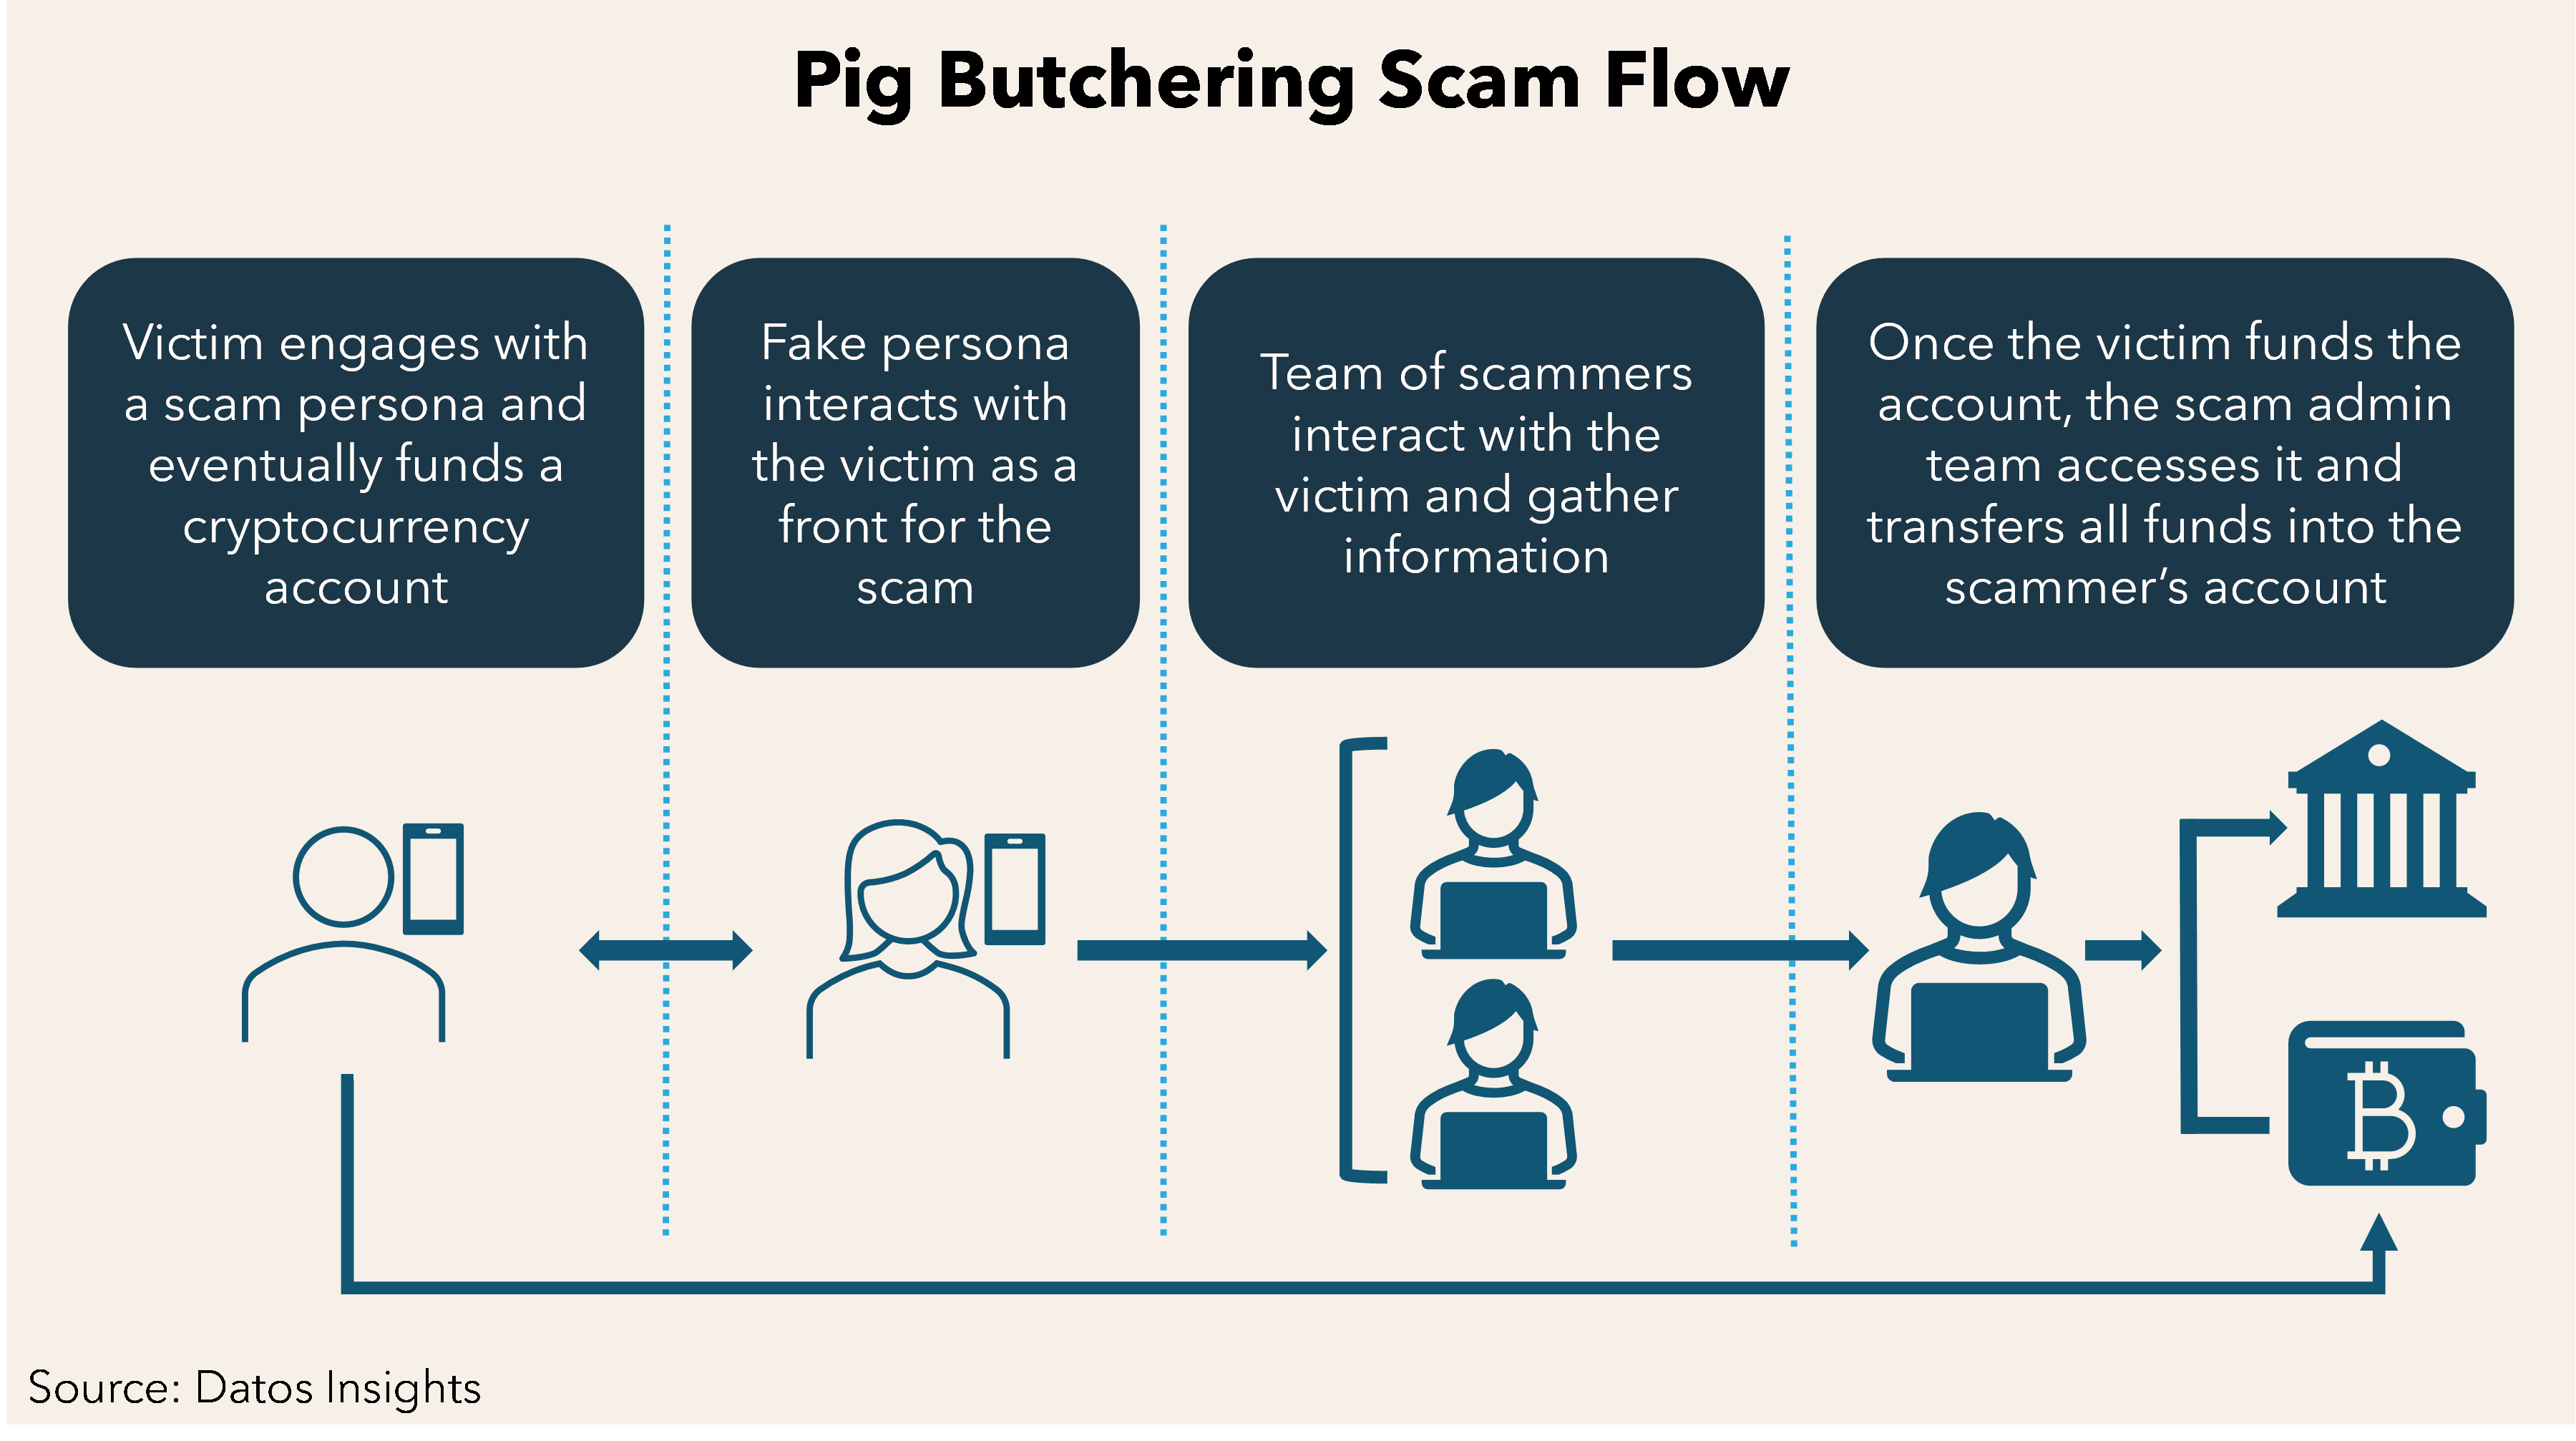 Image showing pig butchering scam flow.